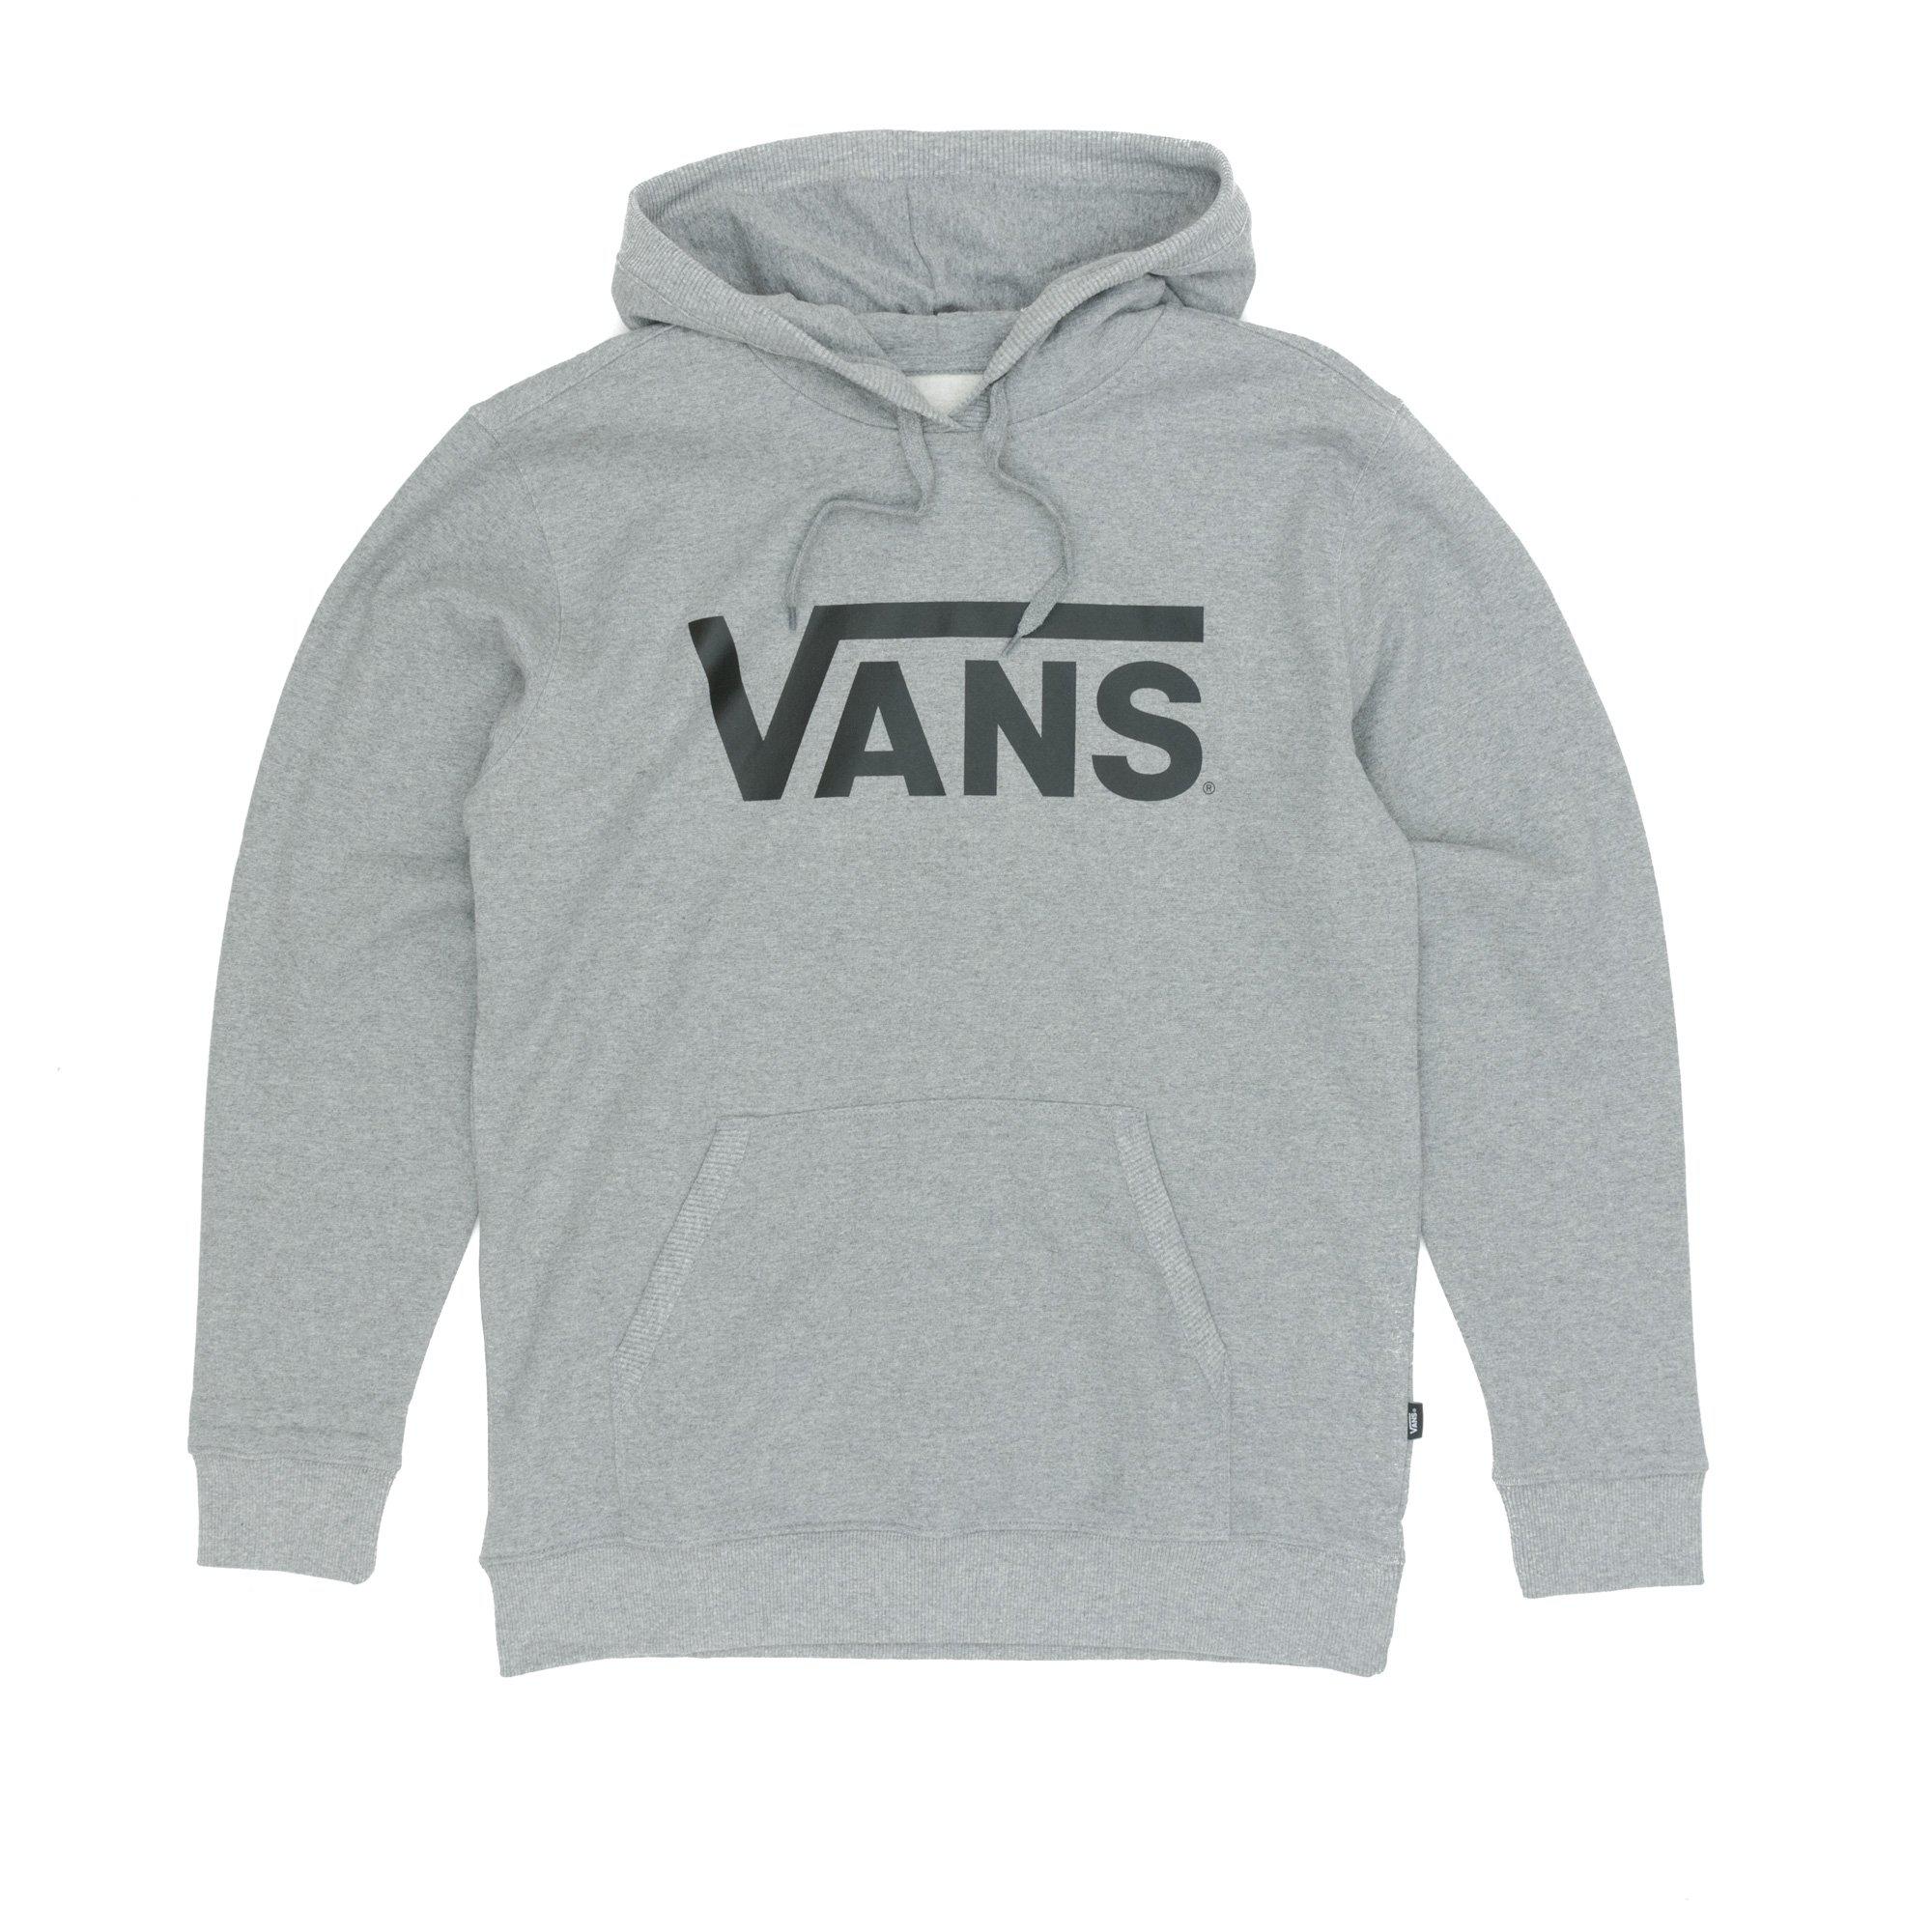 grey vans jumper